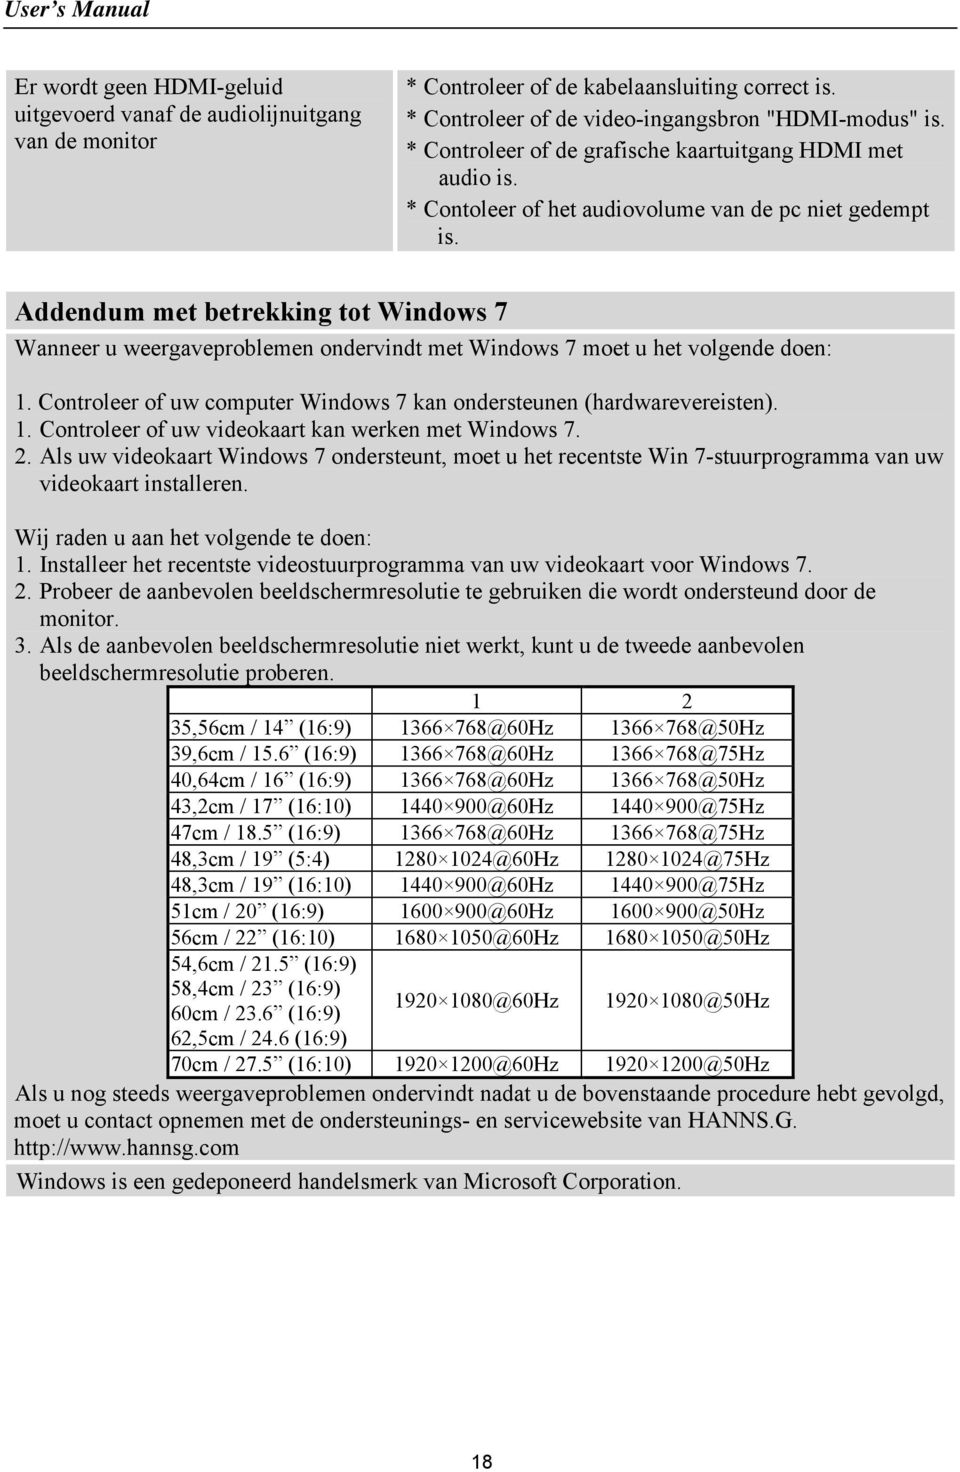 Addendum met betrekking tot Windows 7 Wanneer u weergaveproblemen ondervindt met Windows 7 moet u het volgende doen: 1. Controleer of uw computer Windows 7 kan ondersteunen (hardwarevereisten). 1. Controleer of uw videokaart kan werken met Windows 7.